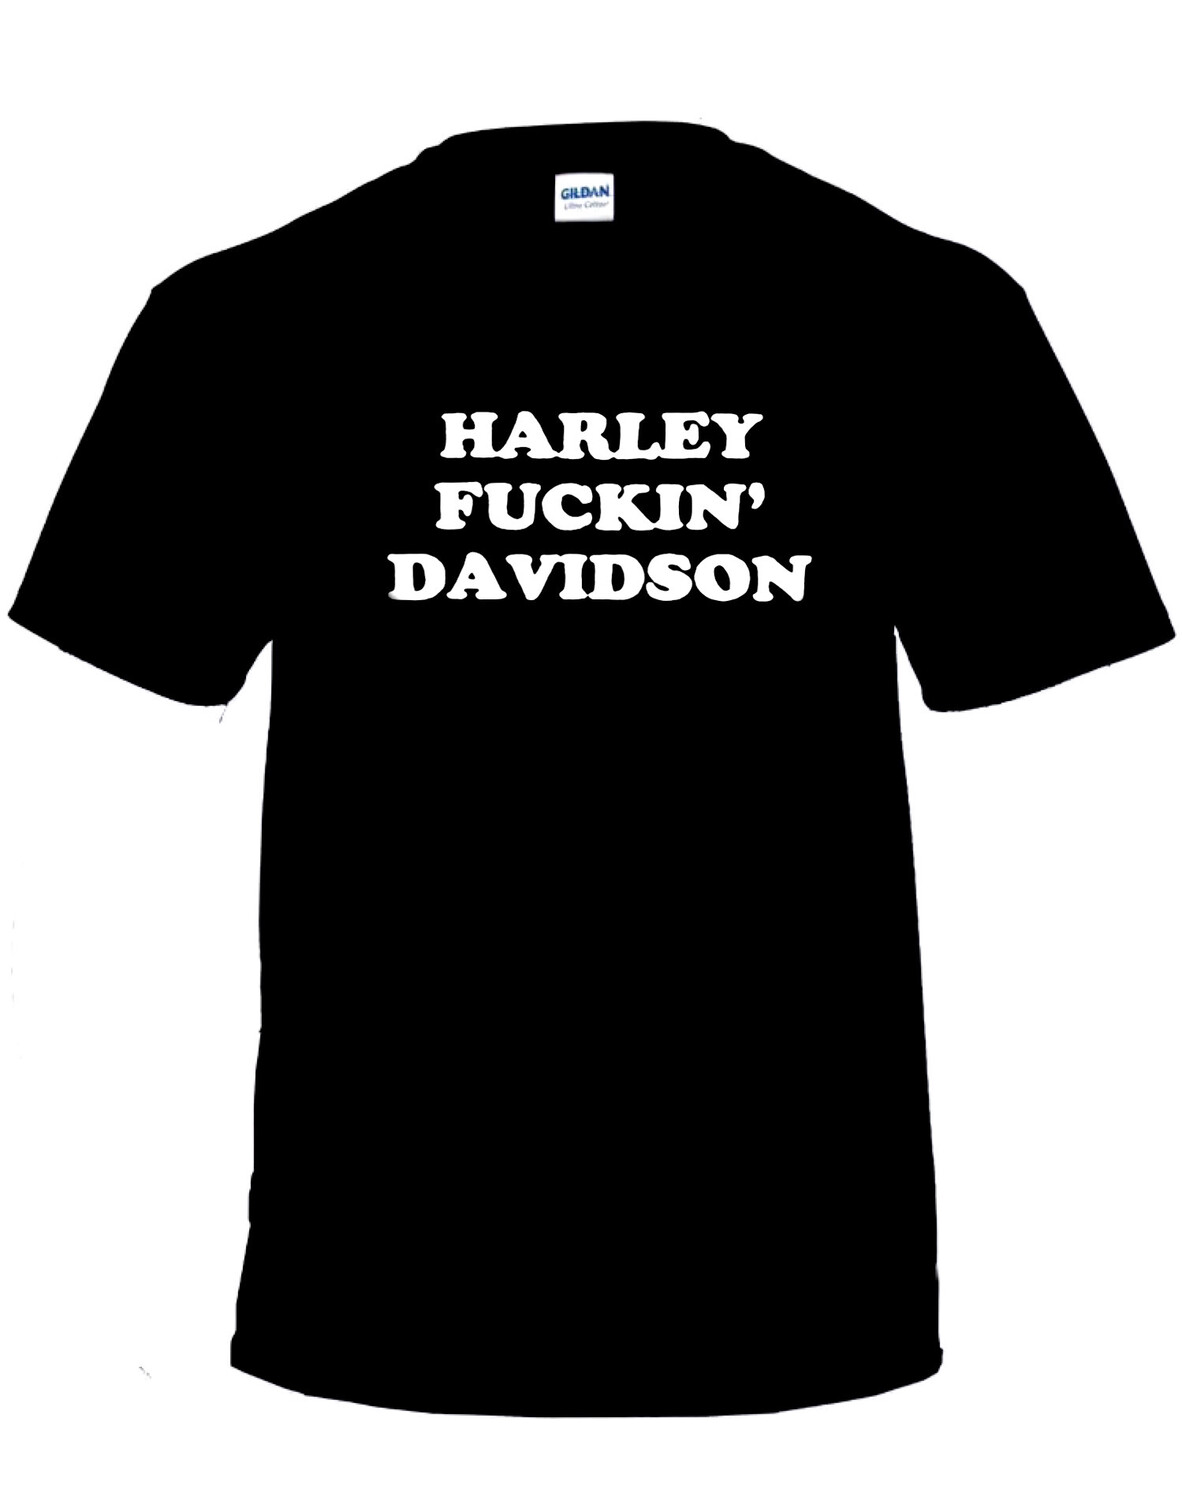 Harley F***in’ Davidson